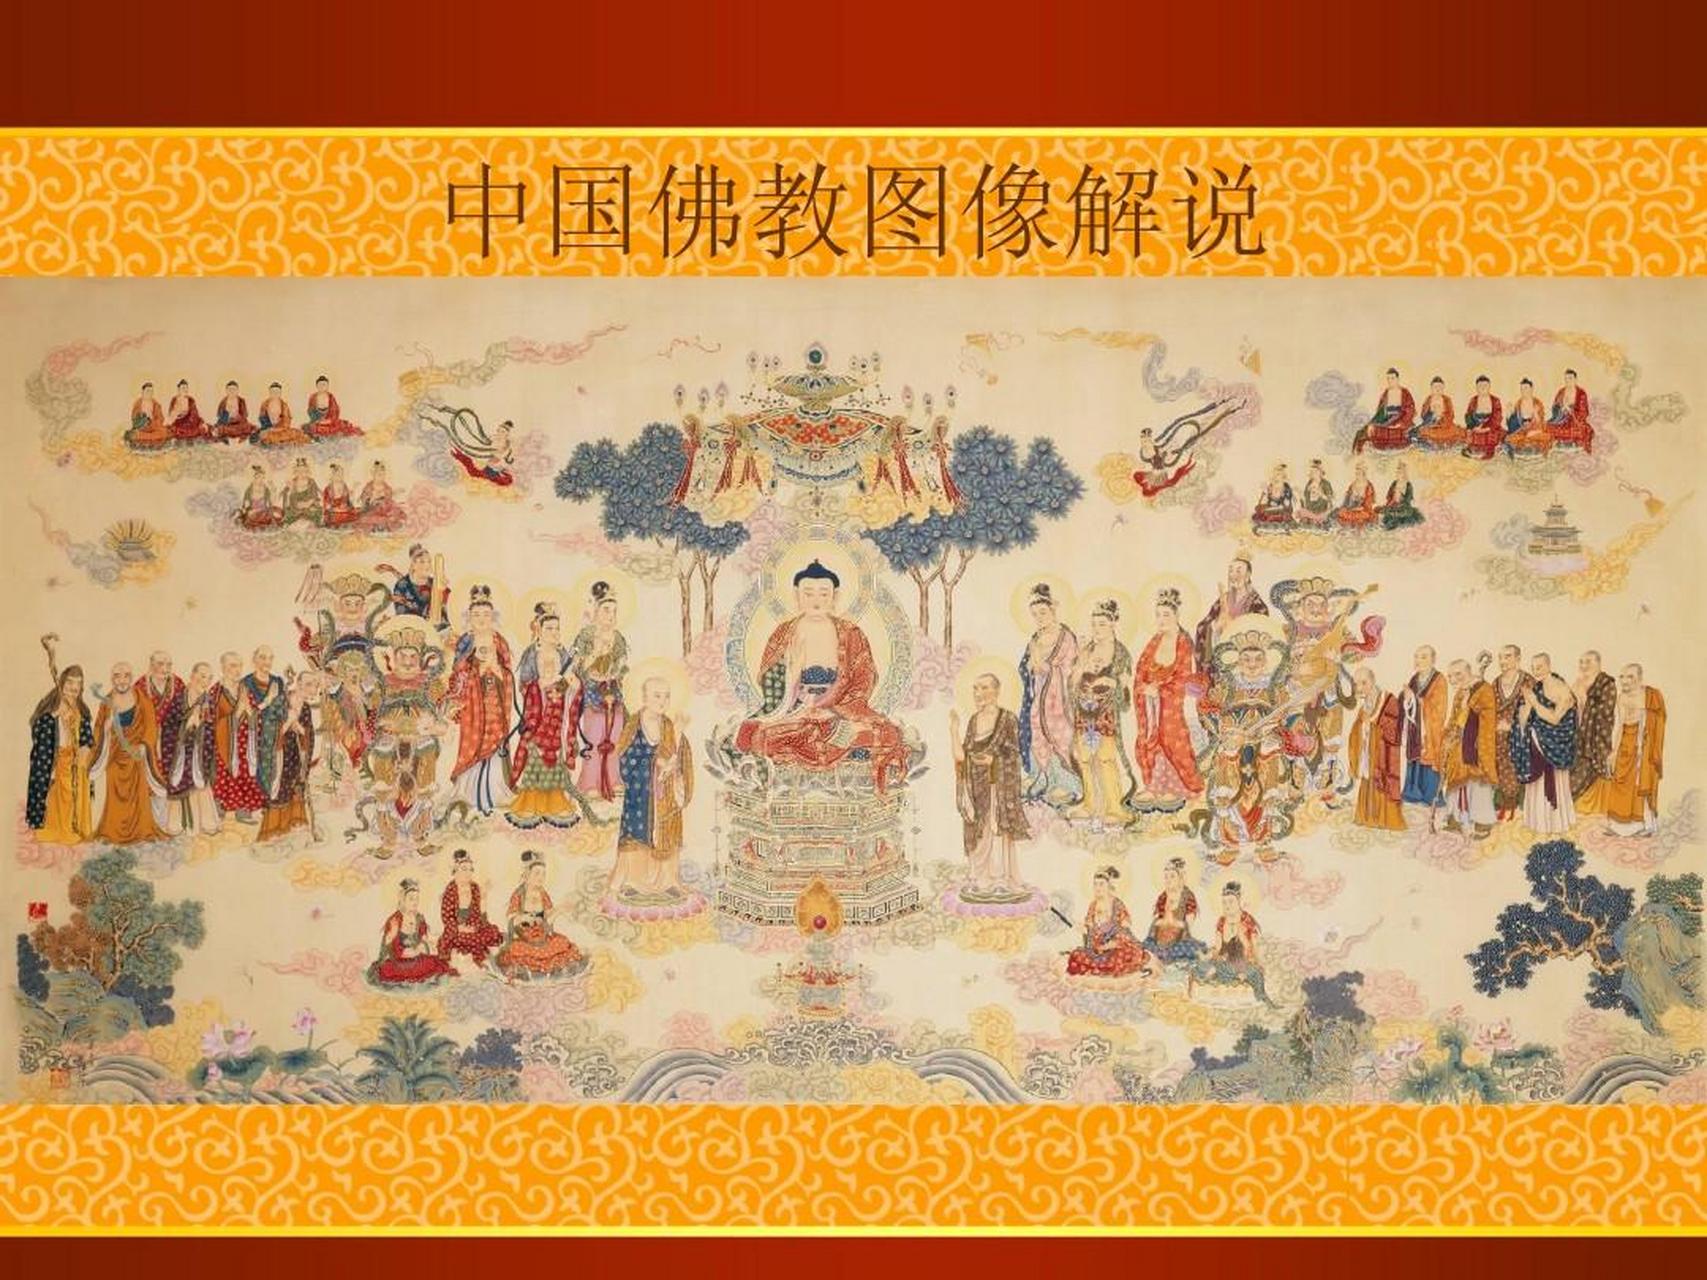 佛教在中国的传播          西汉末年,佛教传入中国